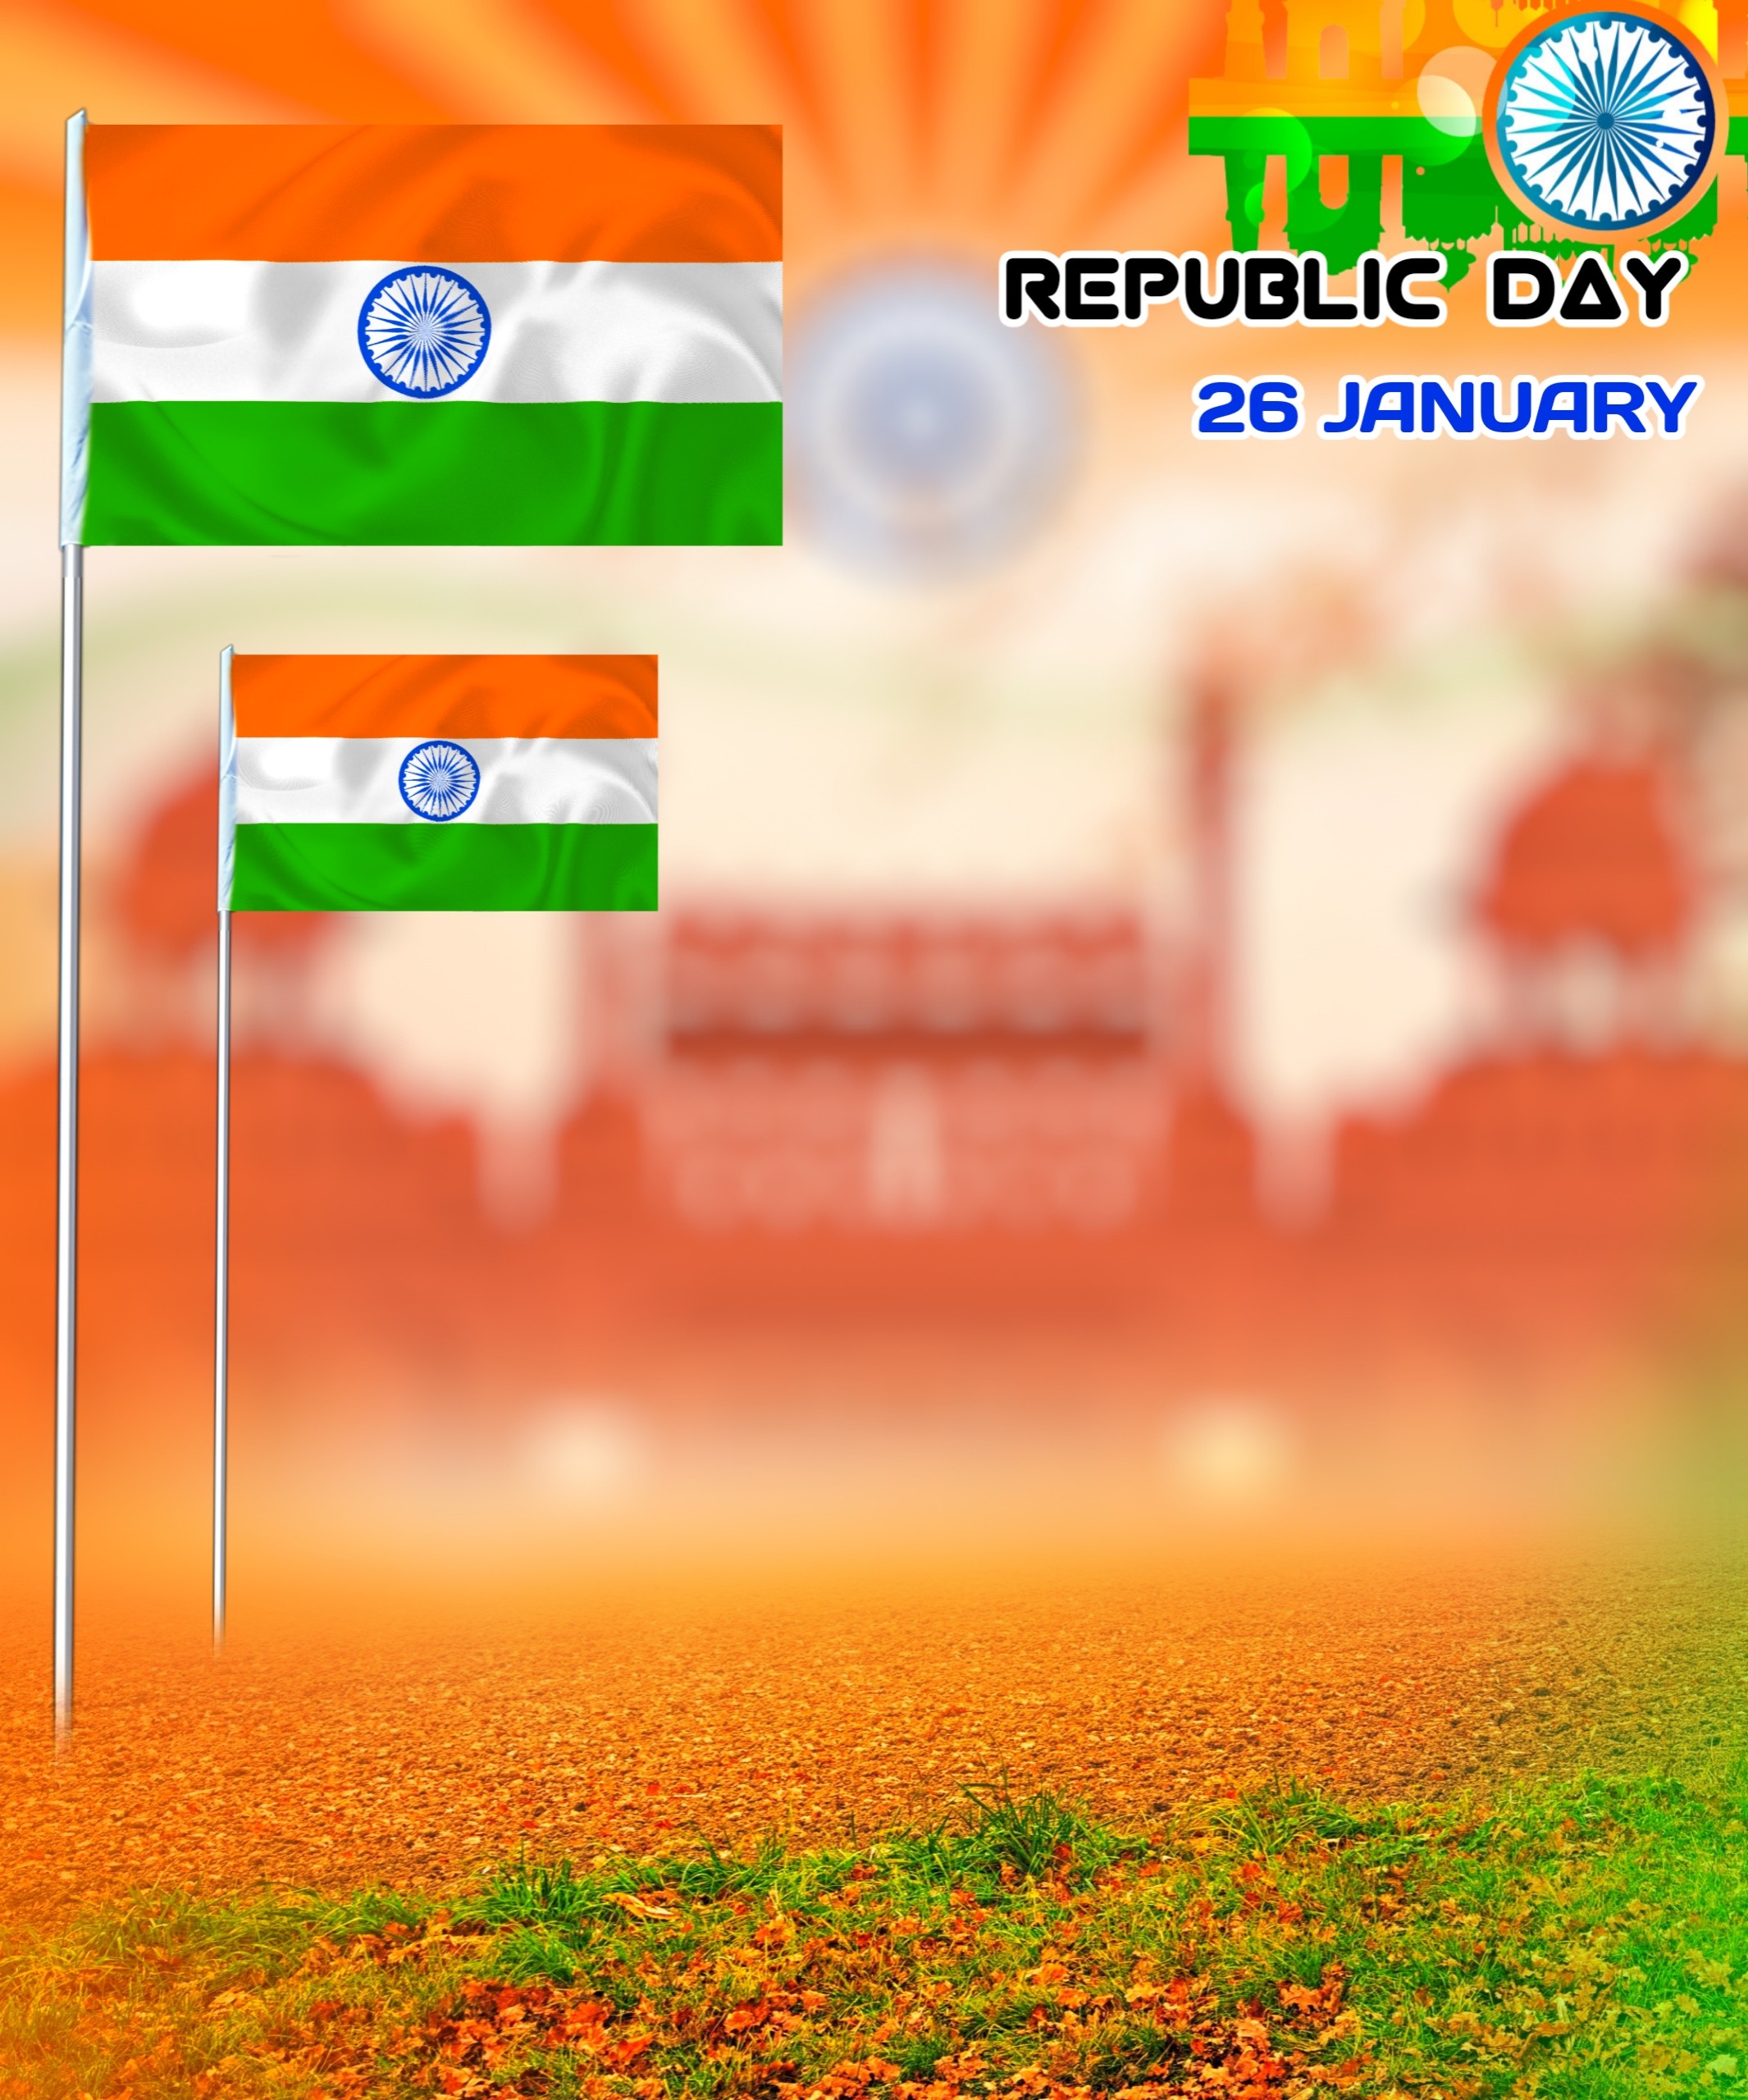 Amazing Republic Day Background Image Free